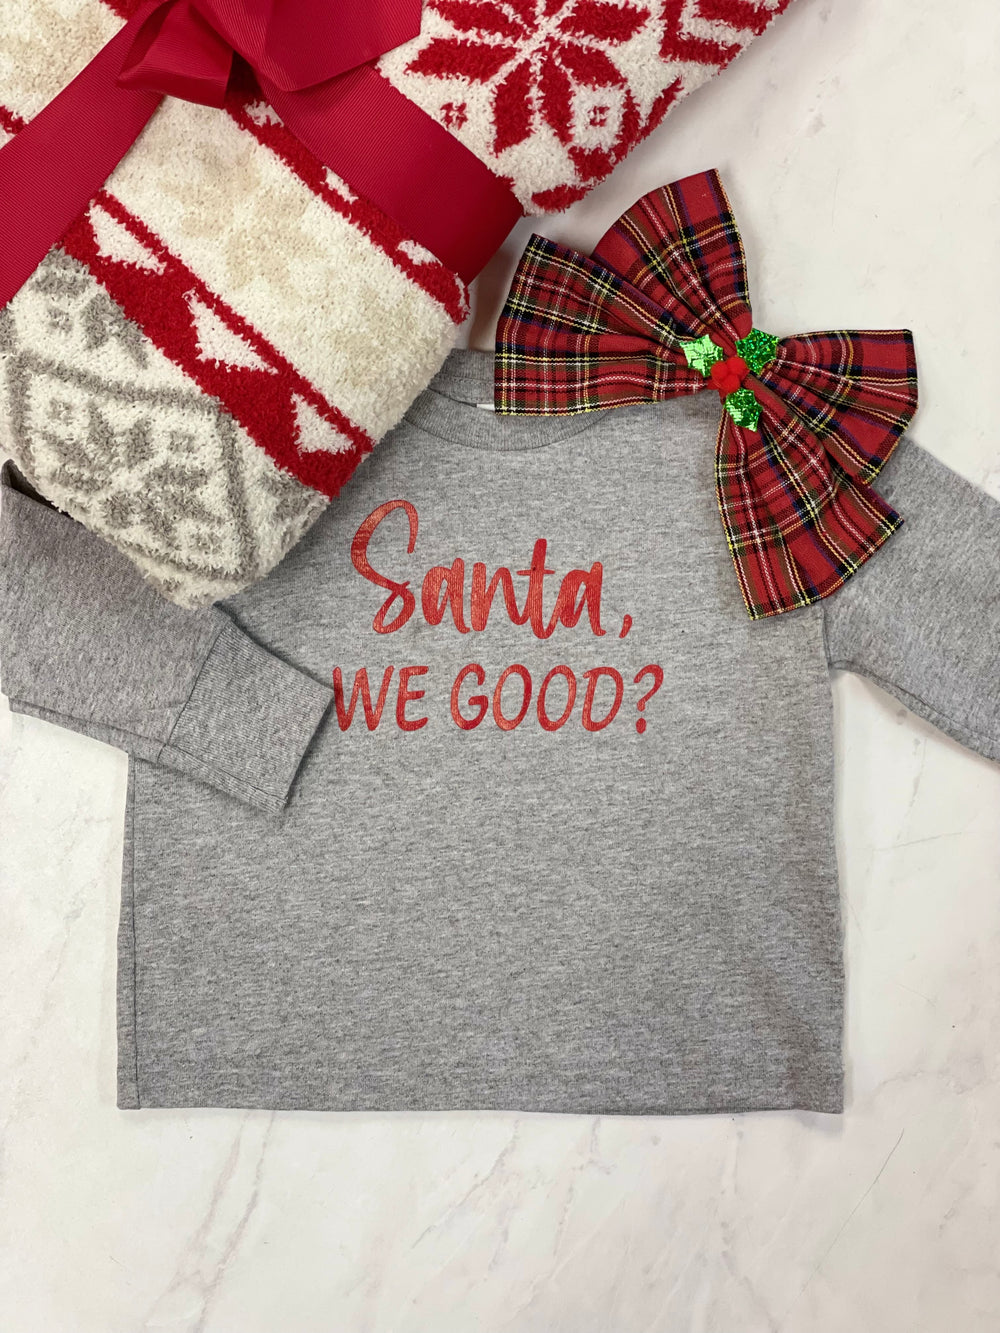 Santa We Good Kids Shirt - ShopSpoiled